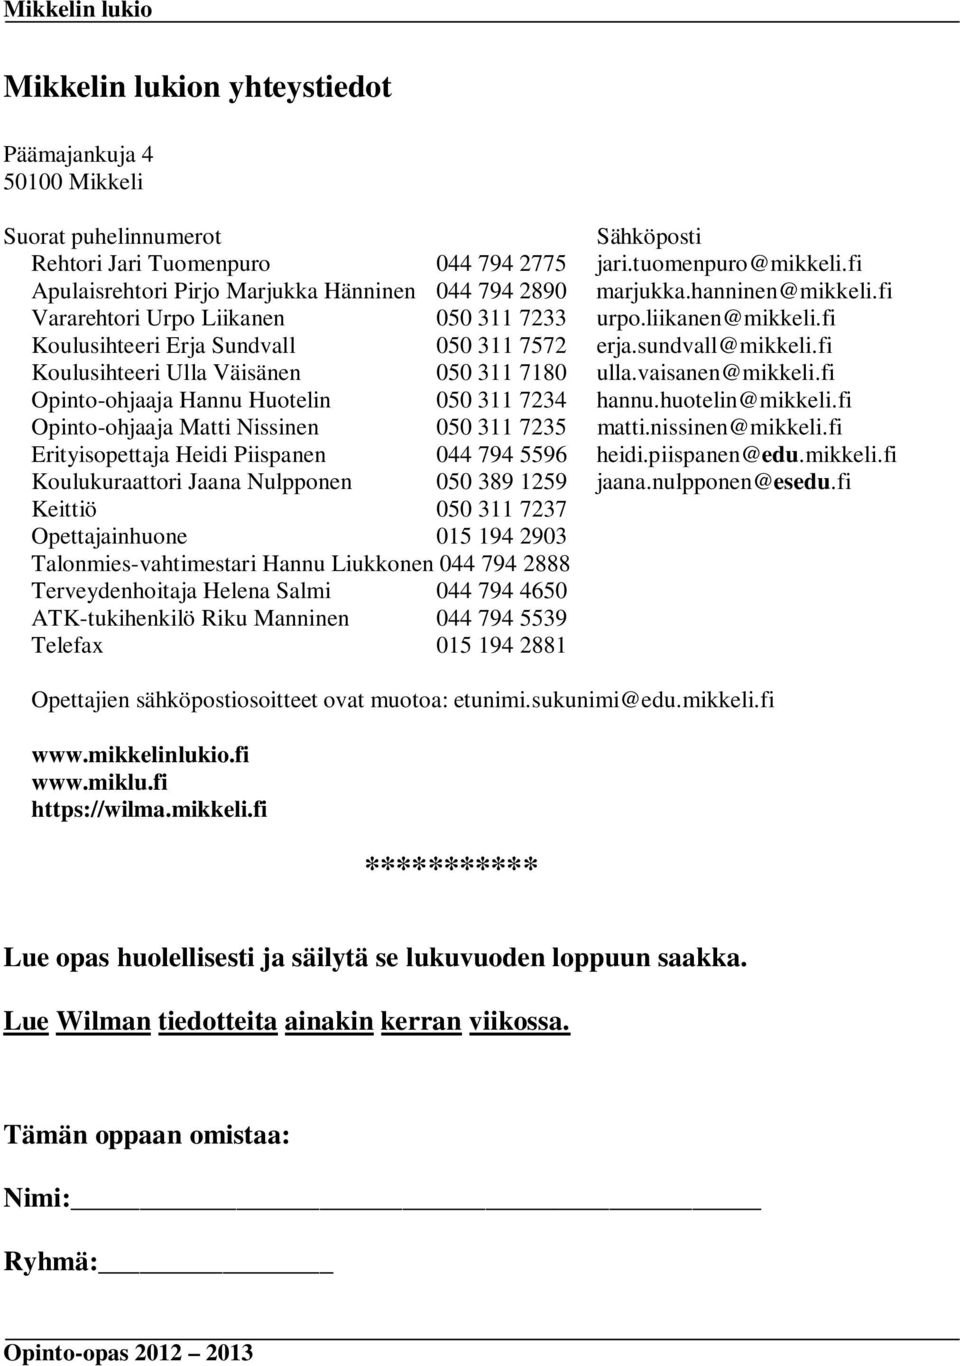 sundvall@mikkeli.fi Koulusihteeri Ulla Väisänen 050 311 7180 ulla.vaisanen@mikkeli.fi Opinto-ohjaaja Hannu Huotelin 050 311 7234 hannu.huotelin@mikkeli.